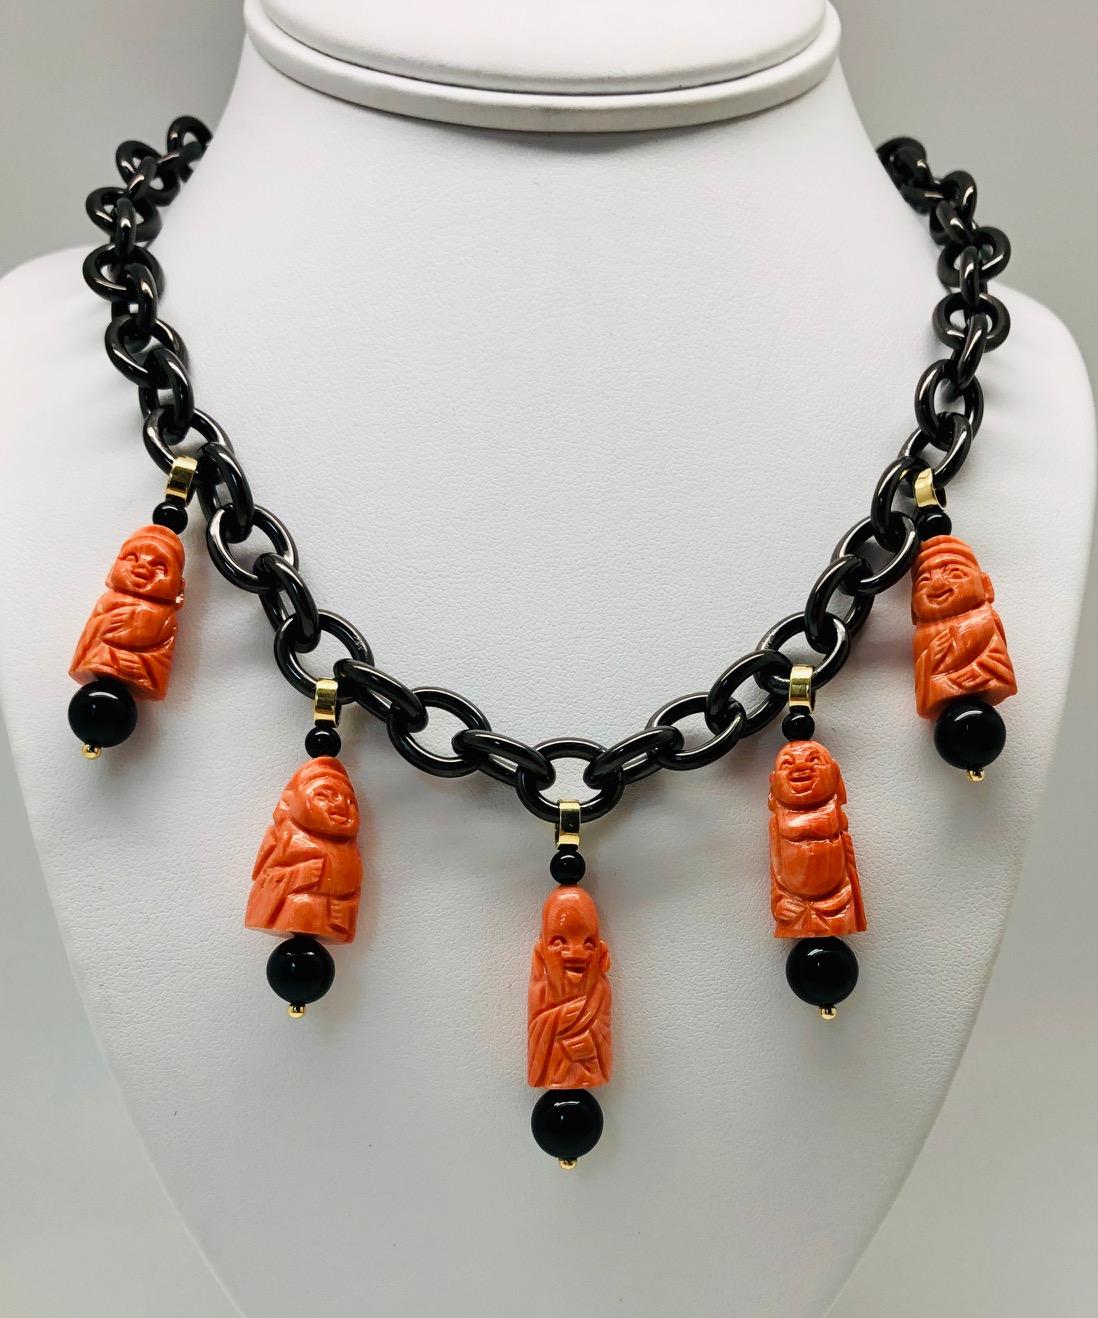 Diese ungewöhnliche Halskette ist aus geschwärztem Stahl gefertigt und besteht aus 5 mediterranen Korallenperlen, die von Hand zu glücklichen Buddhas und Gottheiten geschnitzt wurden. Mit glänzenden schwarzen Onyxperlen und Akzenten aus 18-karätigem